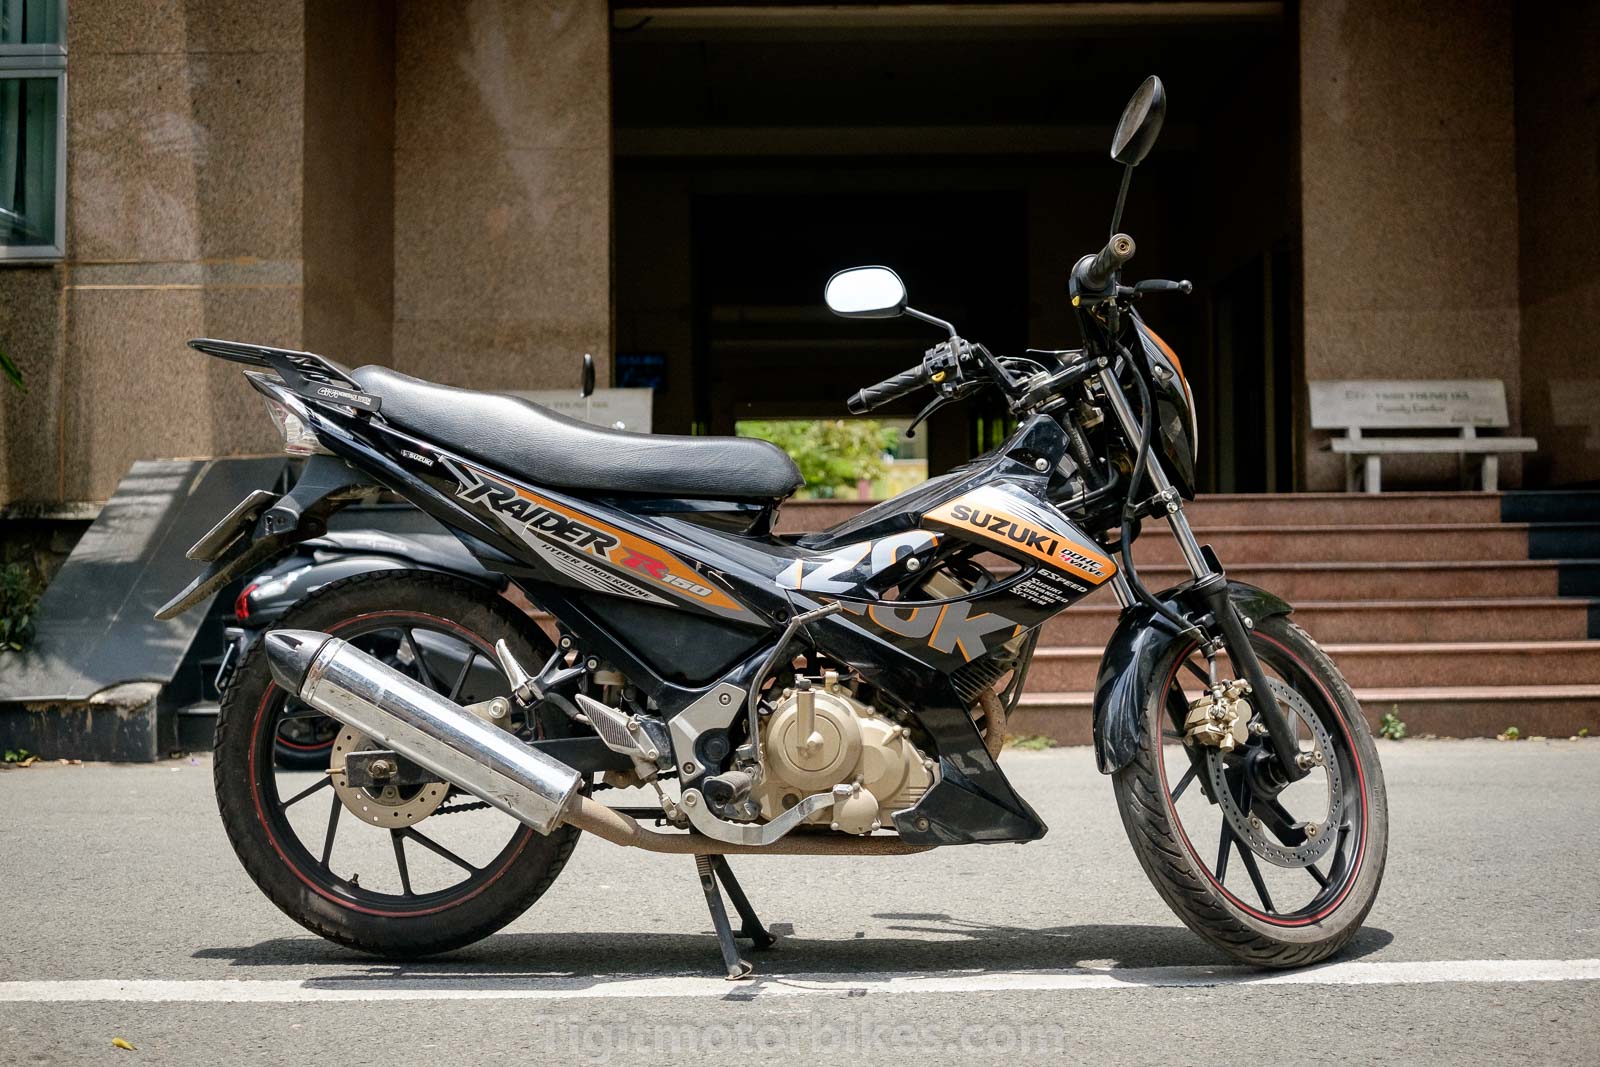 Suzuki Raider 150cc - Tour Vietnam With Quality Motorbike Rentals